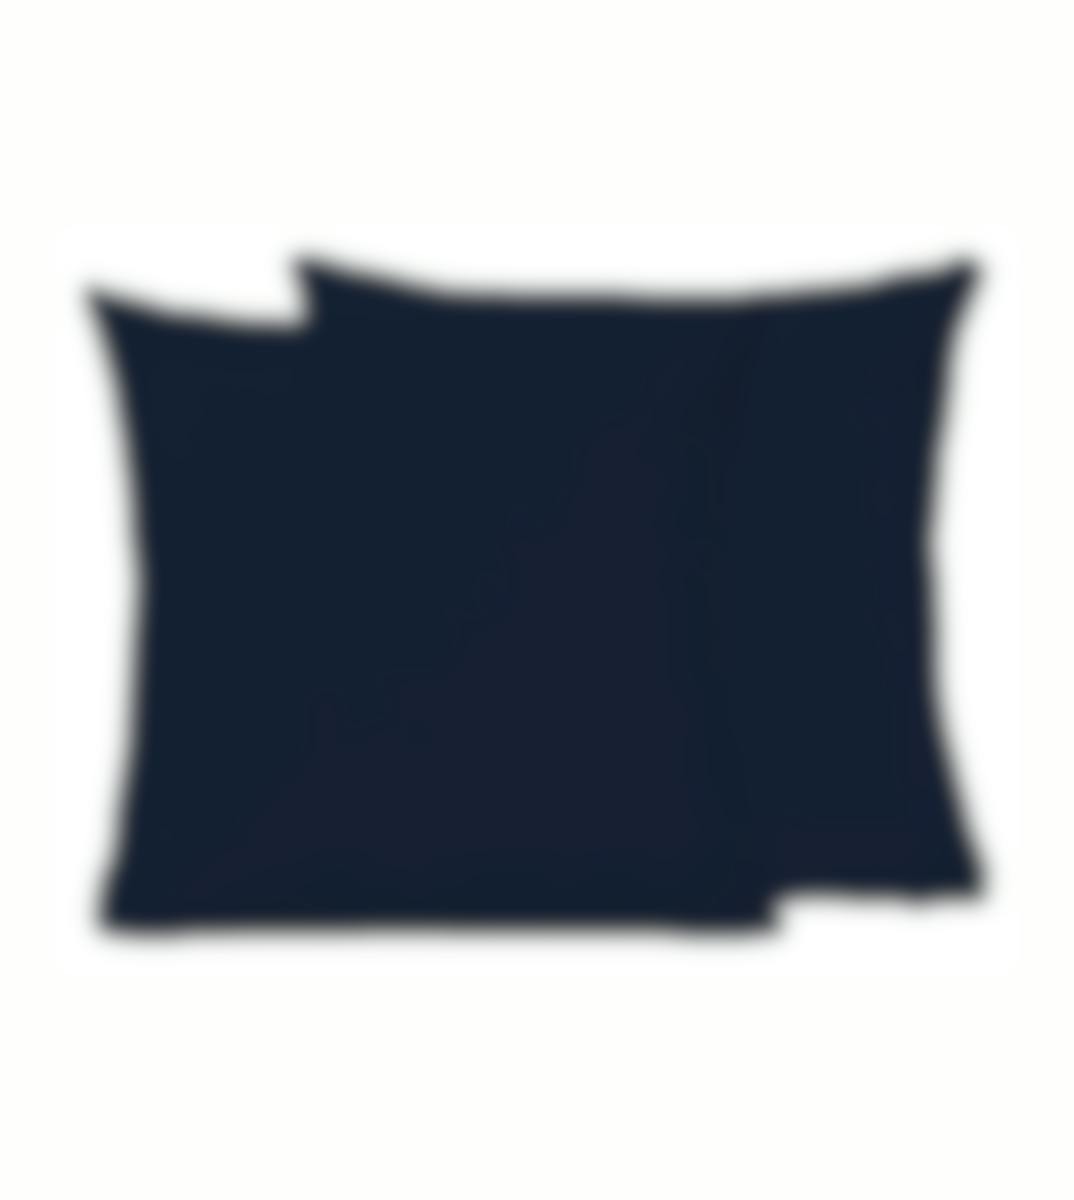 Sleepnight kussensloop marineblauw perkalkatoen set van 2 50 x 70 cm